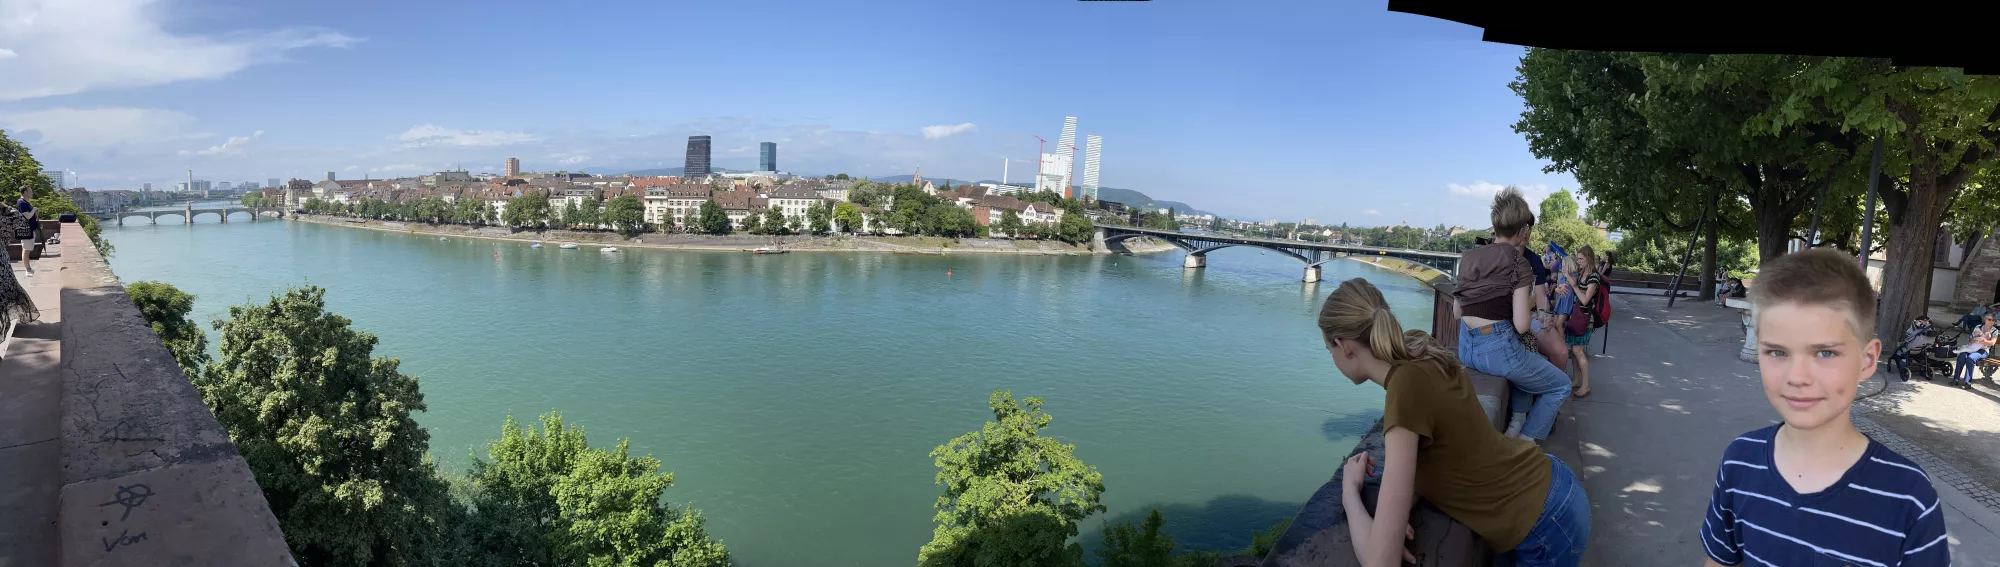 Overlooking the Rhine.